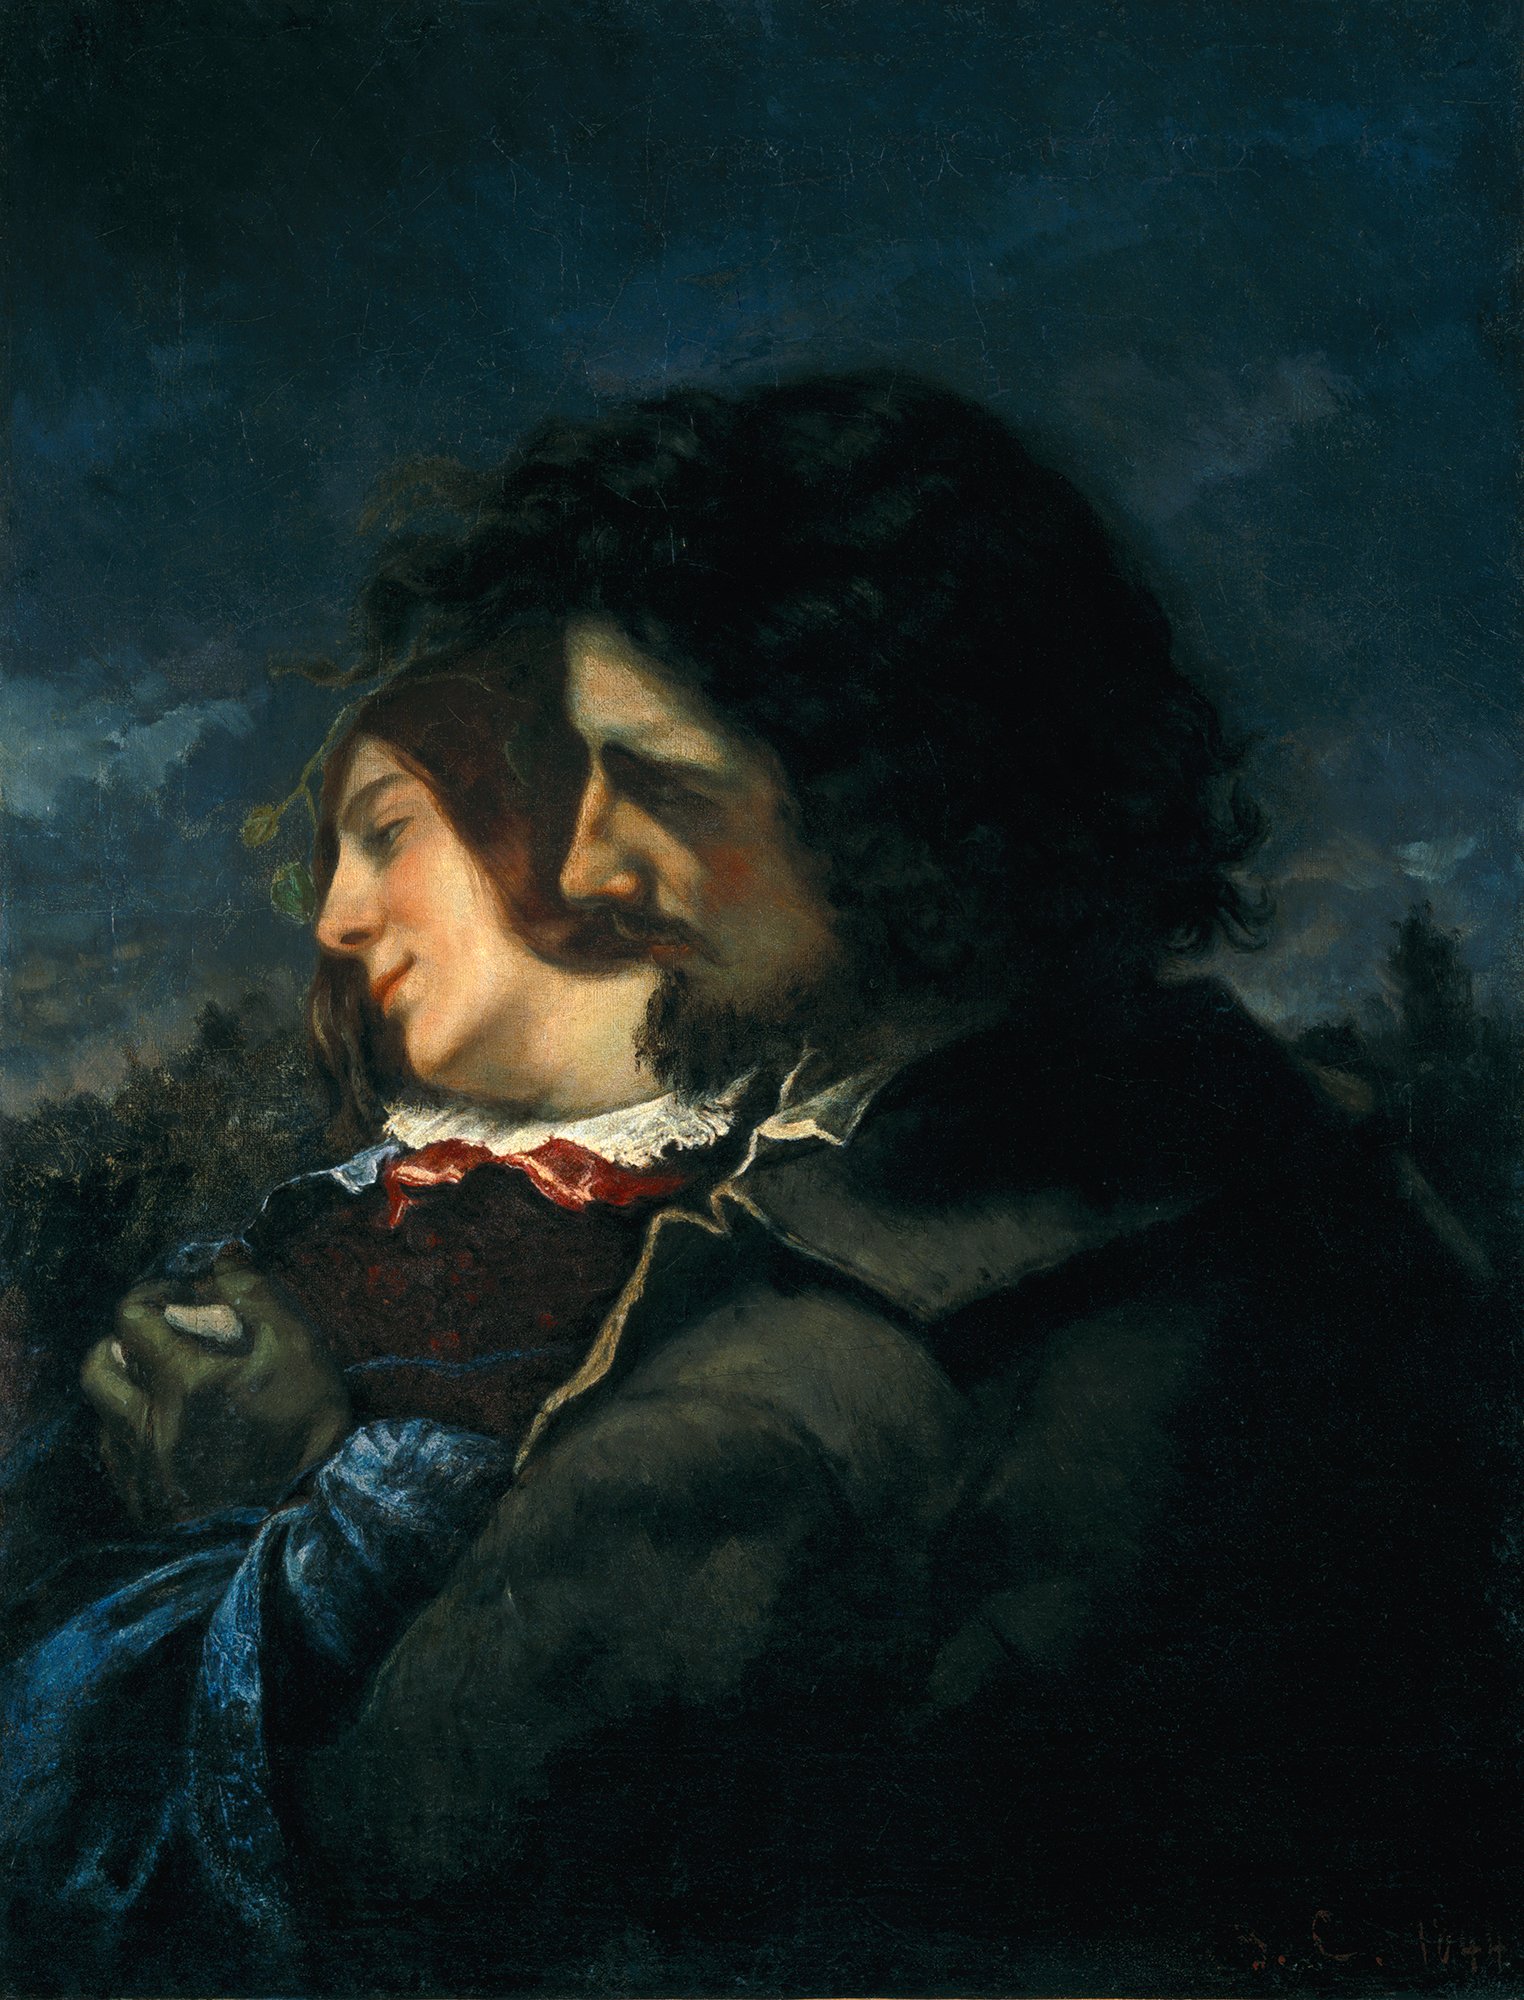 Abbildung des Werks "Die Liebenden auf dem Land" von Gustave Courbet aus dem Jahr 1844, das in der Ausstellung "Ich bin hier" vom 31. Oktober 2015 bis 31. Januar 2016 in der Staatlichen Kunsthalle Karlsruhe zu sehen war.